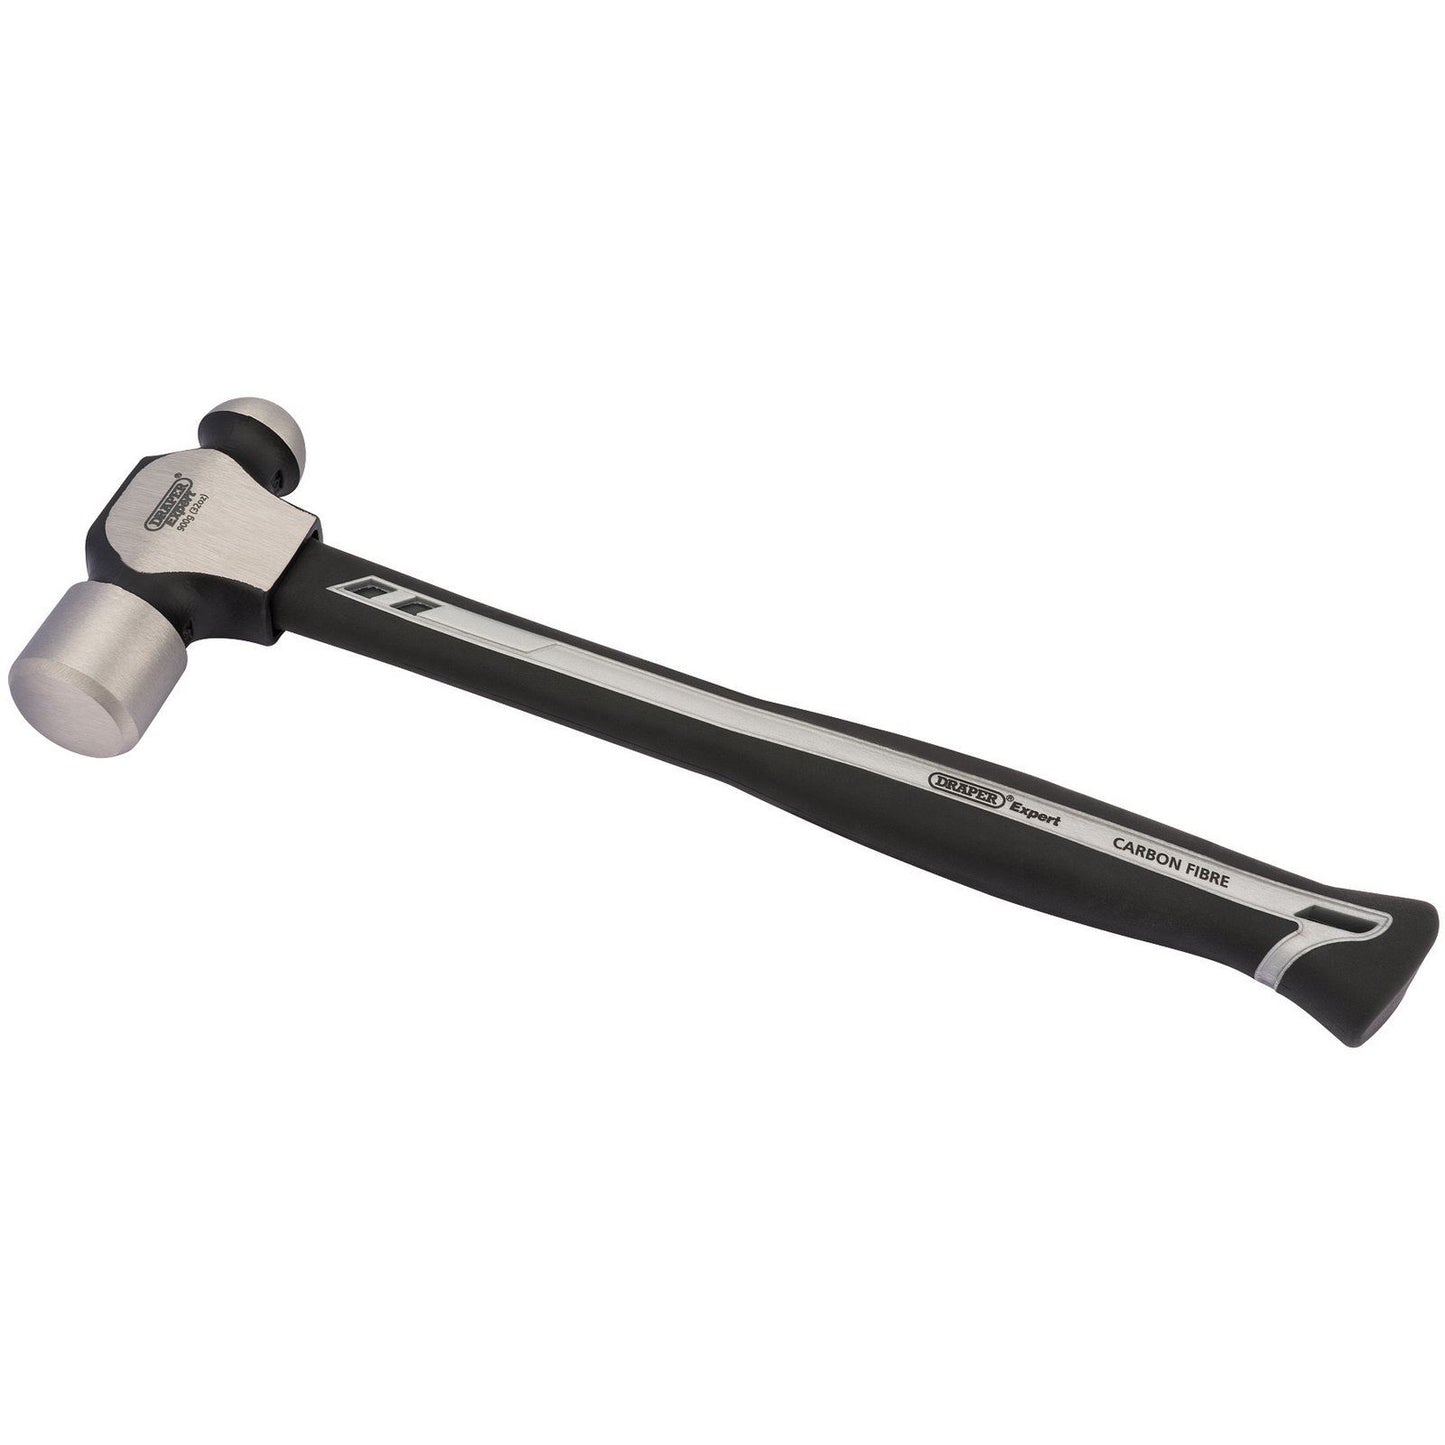 Draper Expert Carbon Fibre Shaft Ball Pein Hammer, 900g/32oz - 26331